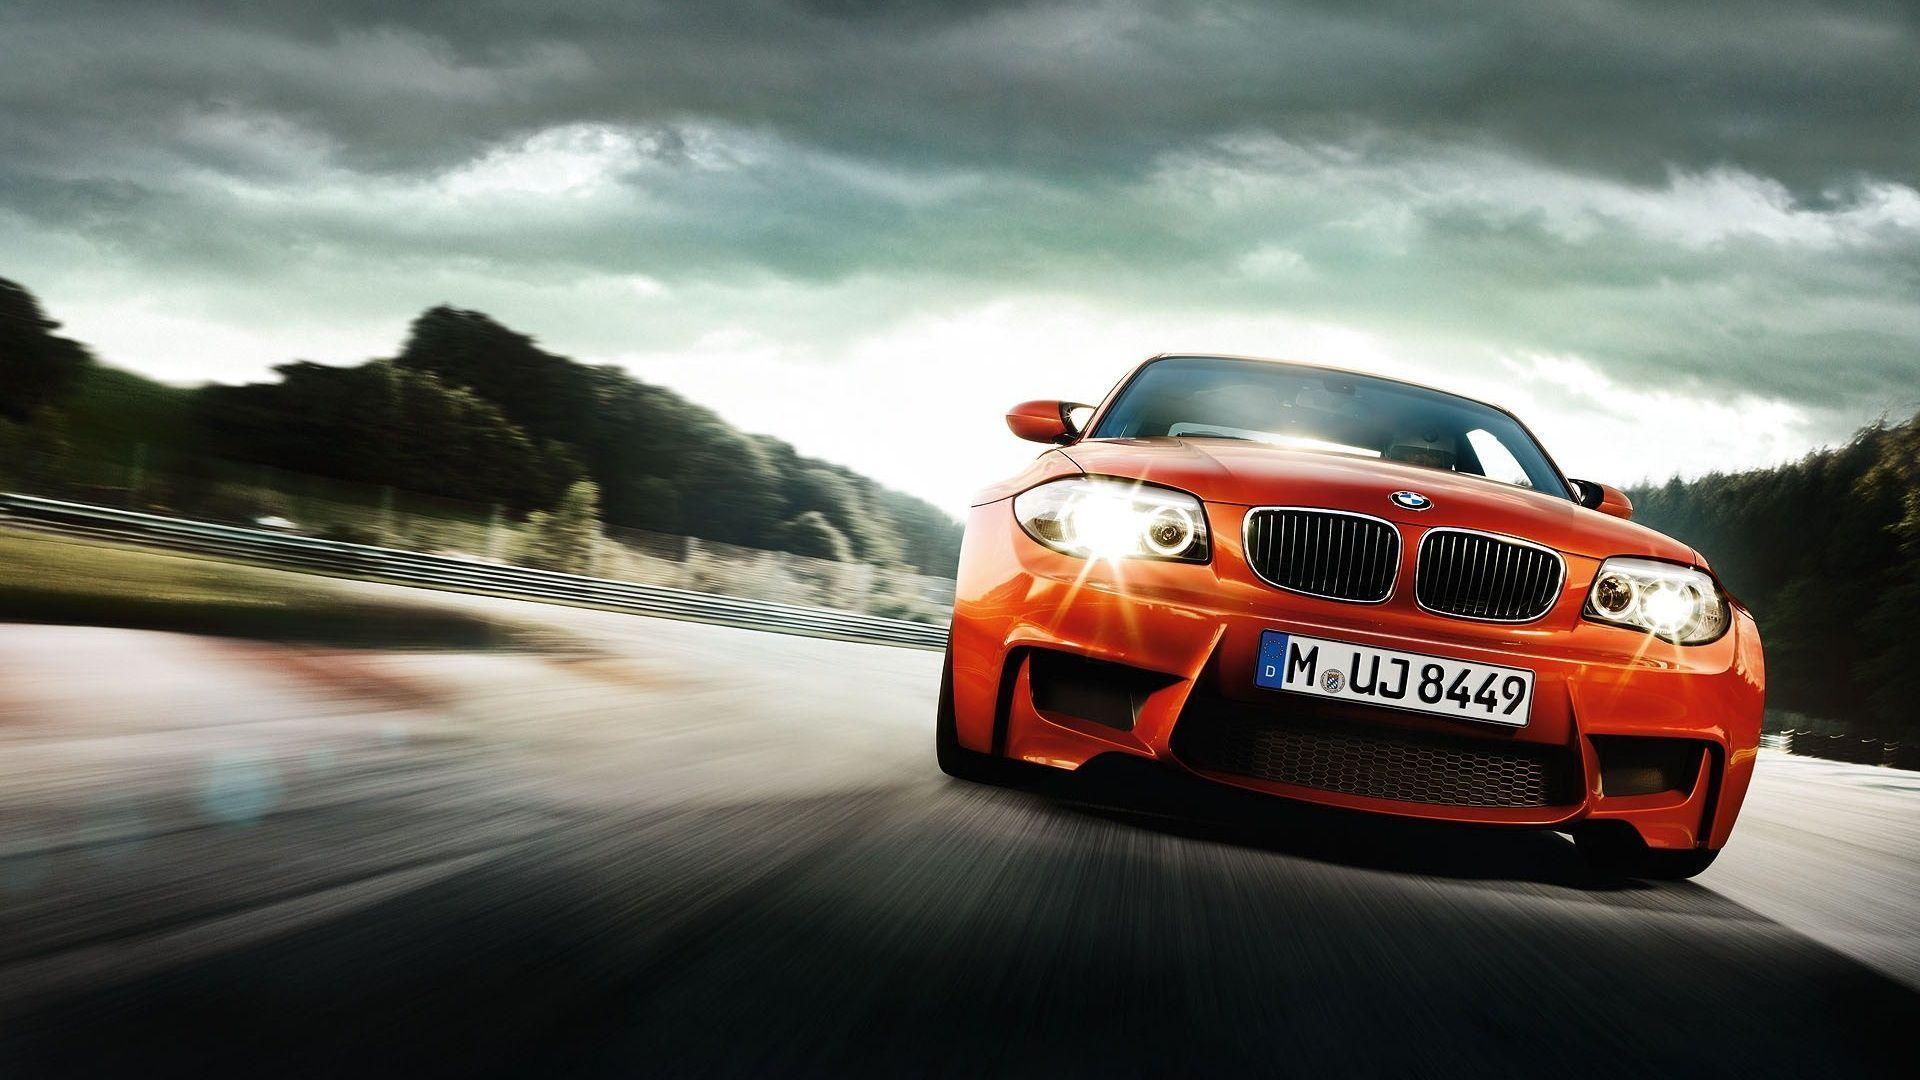 Best BMW Wallpaper For Desktop & Tablets in HD For Download